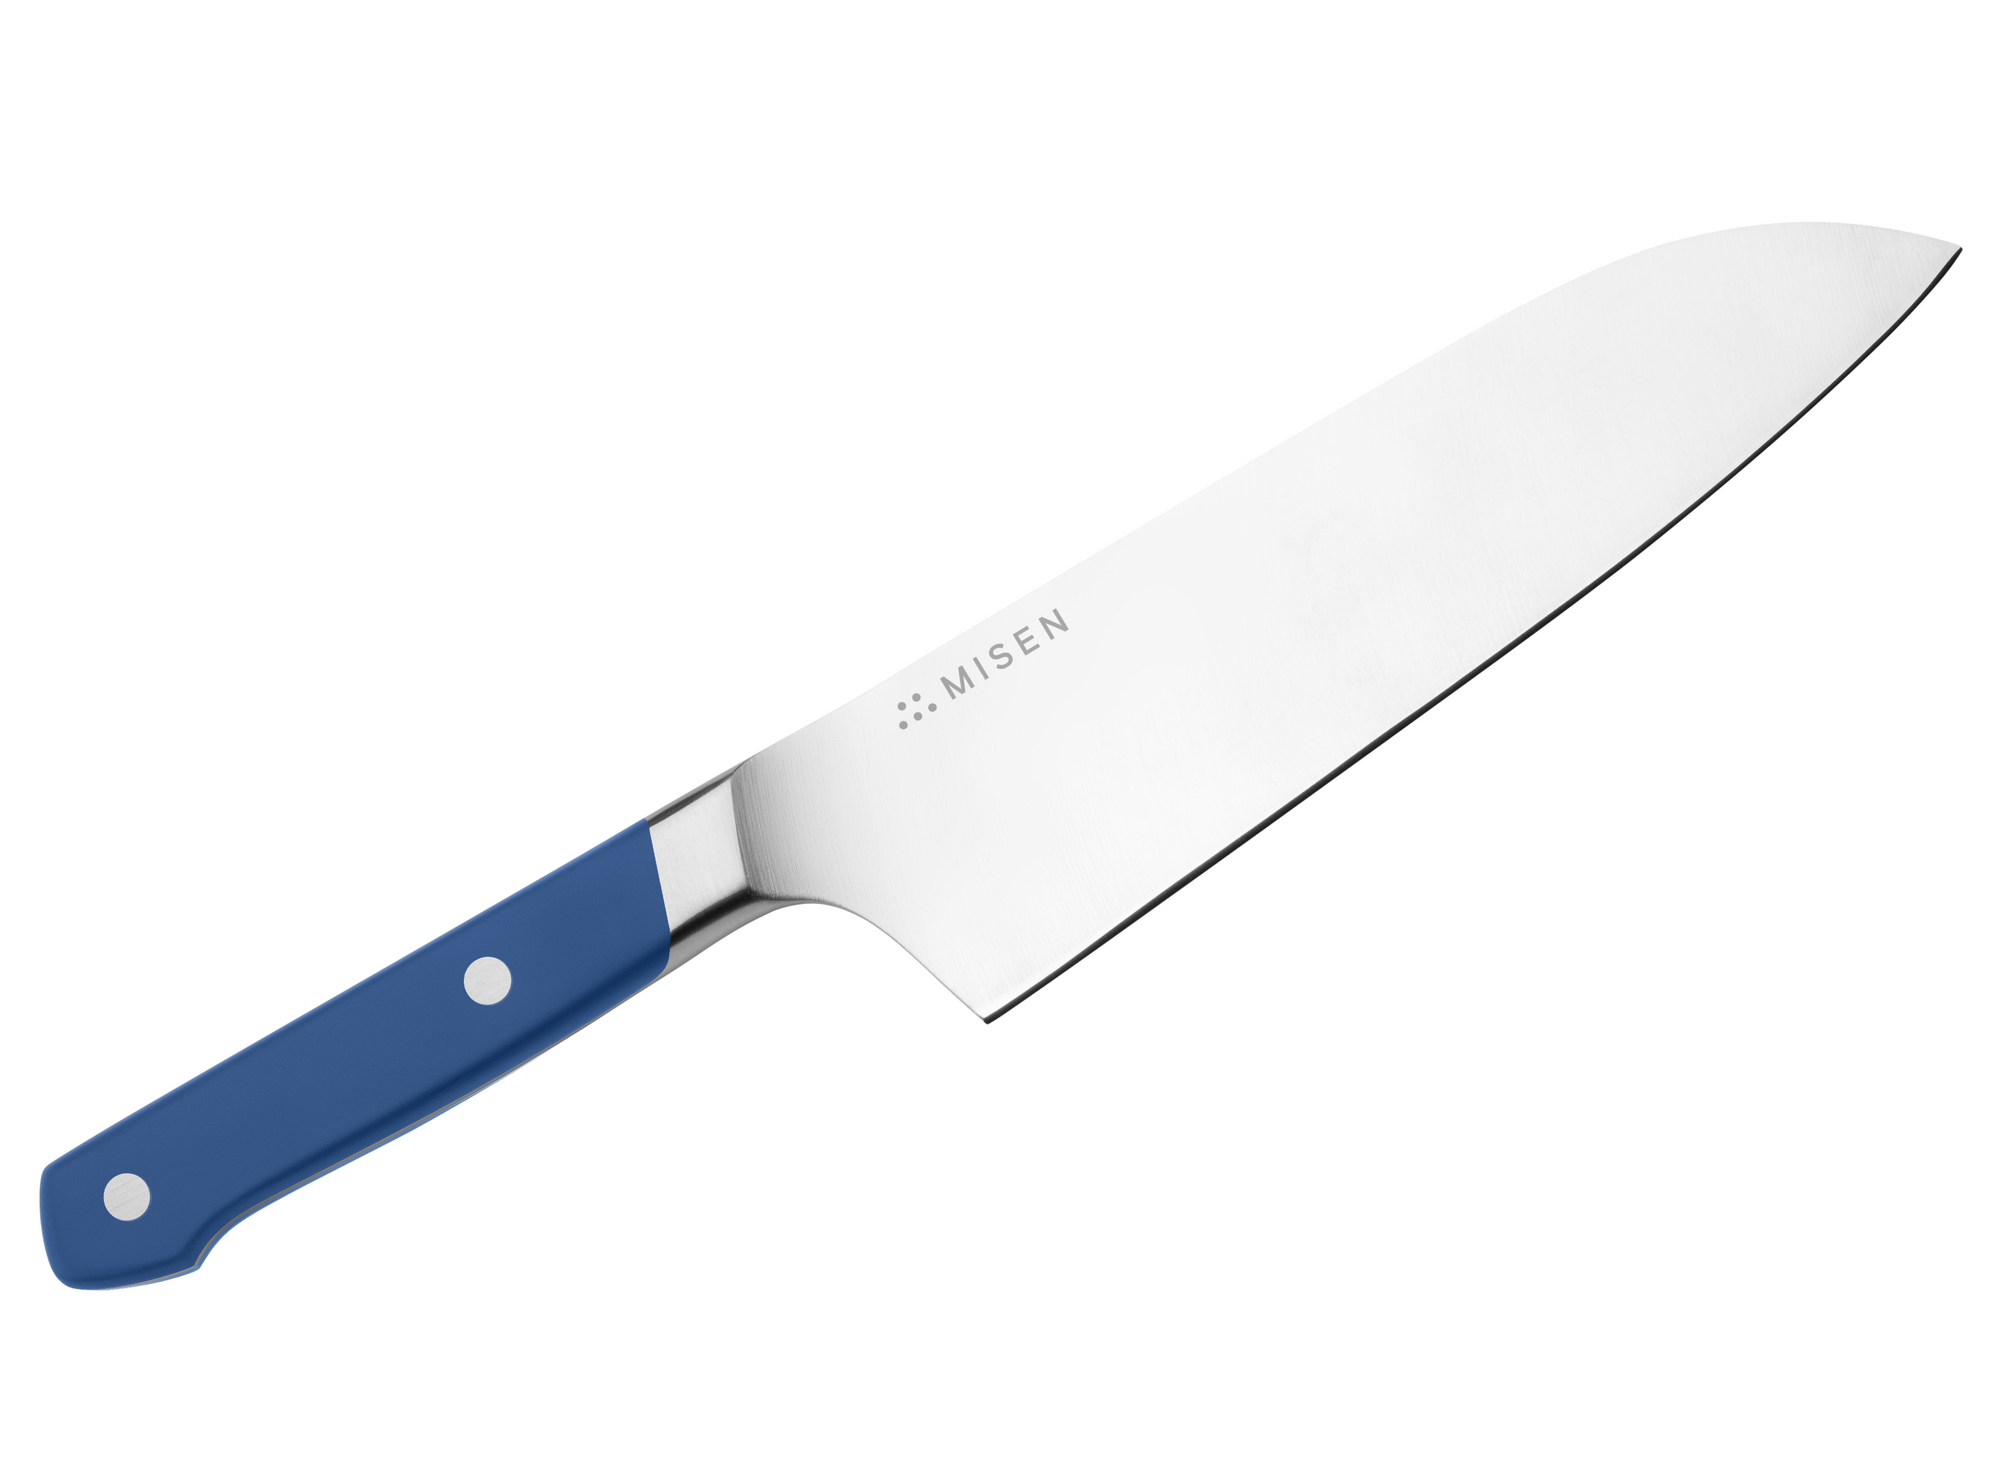 The 5 Best Santoku Knives